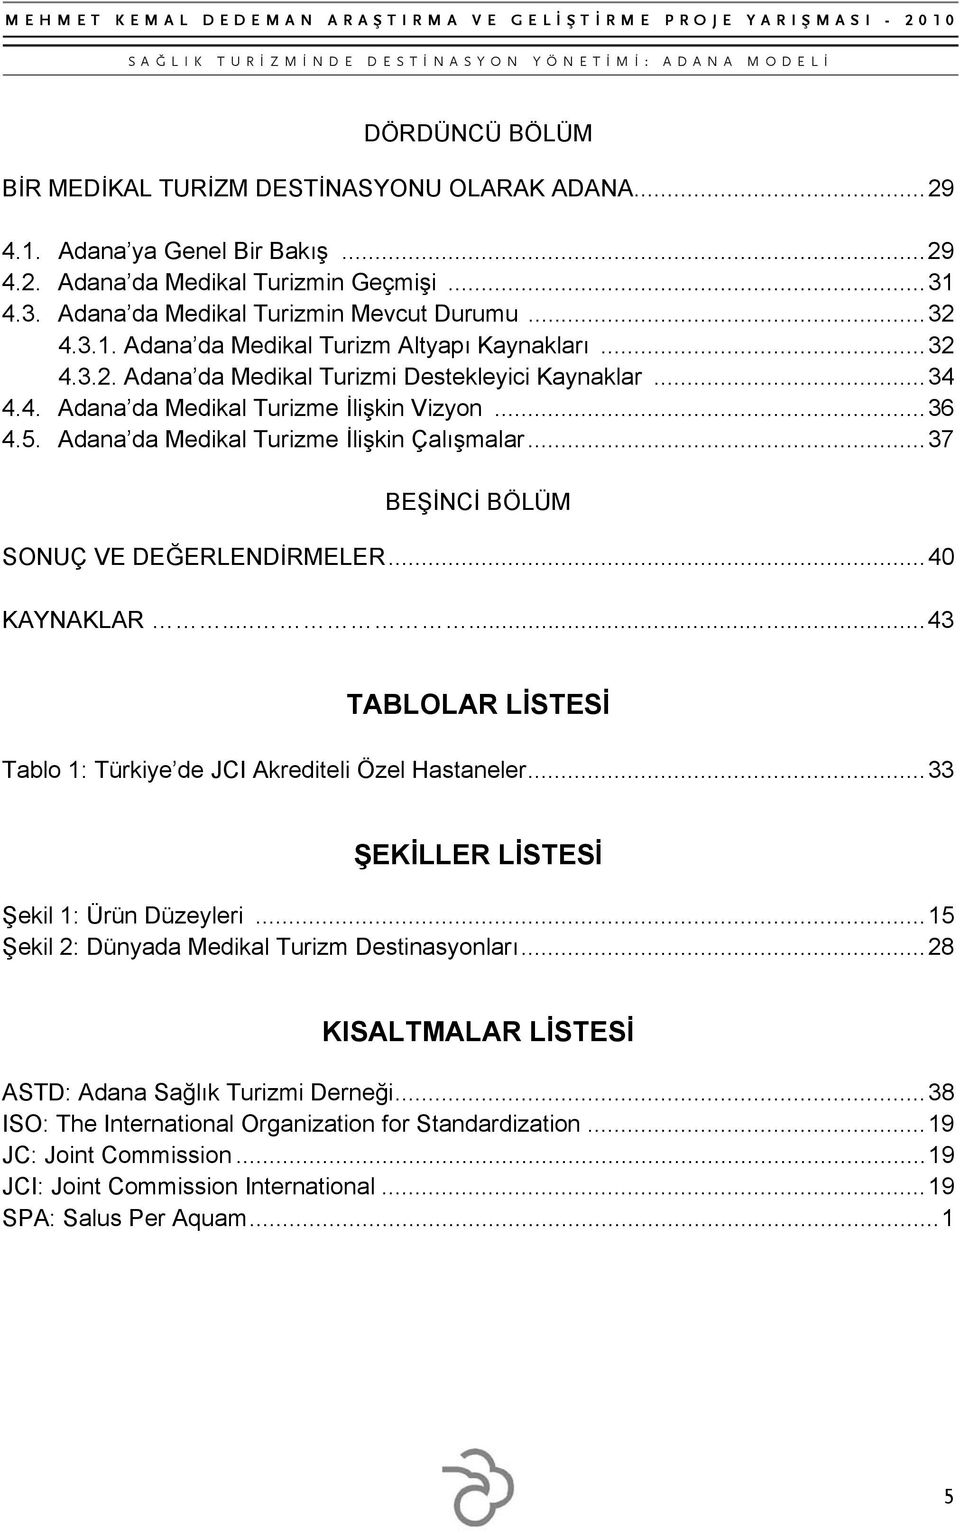 Adana da Medikal Turizme İlişkin Çalışmalar... 37 BEŞİNCİ BÖLÜM SONUÇ VE DEĞERLENDİRMELER... 40 KAYNAKLAR......... 43 TABLOLAR LİSTESİ Tablo 1: Türkiye de JCI Akrediteli Özel Hastaneler.